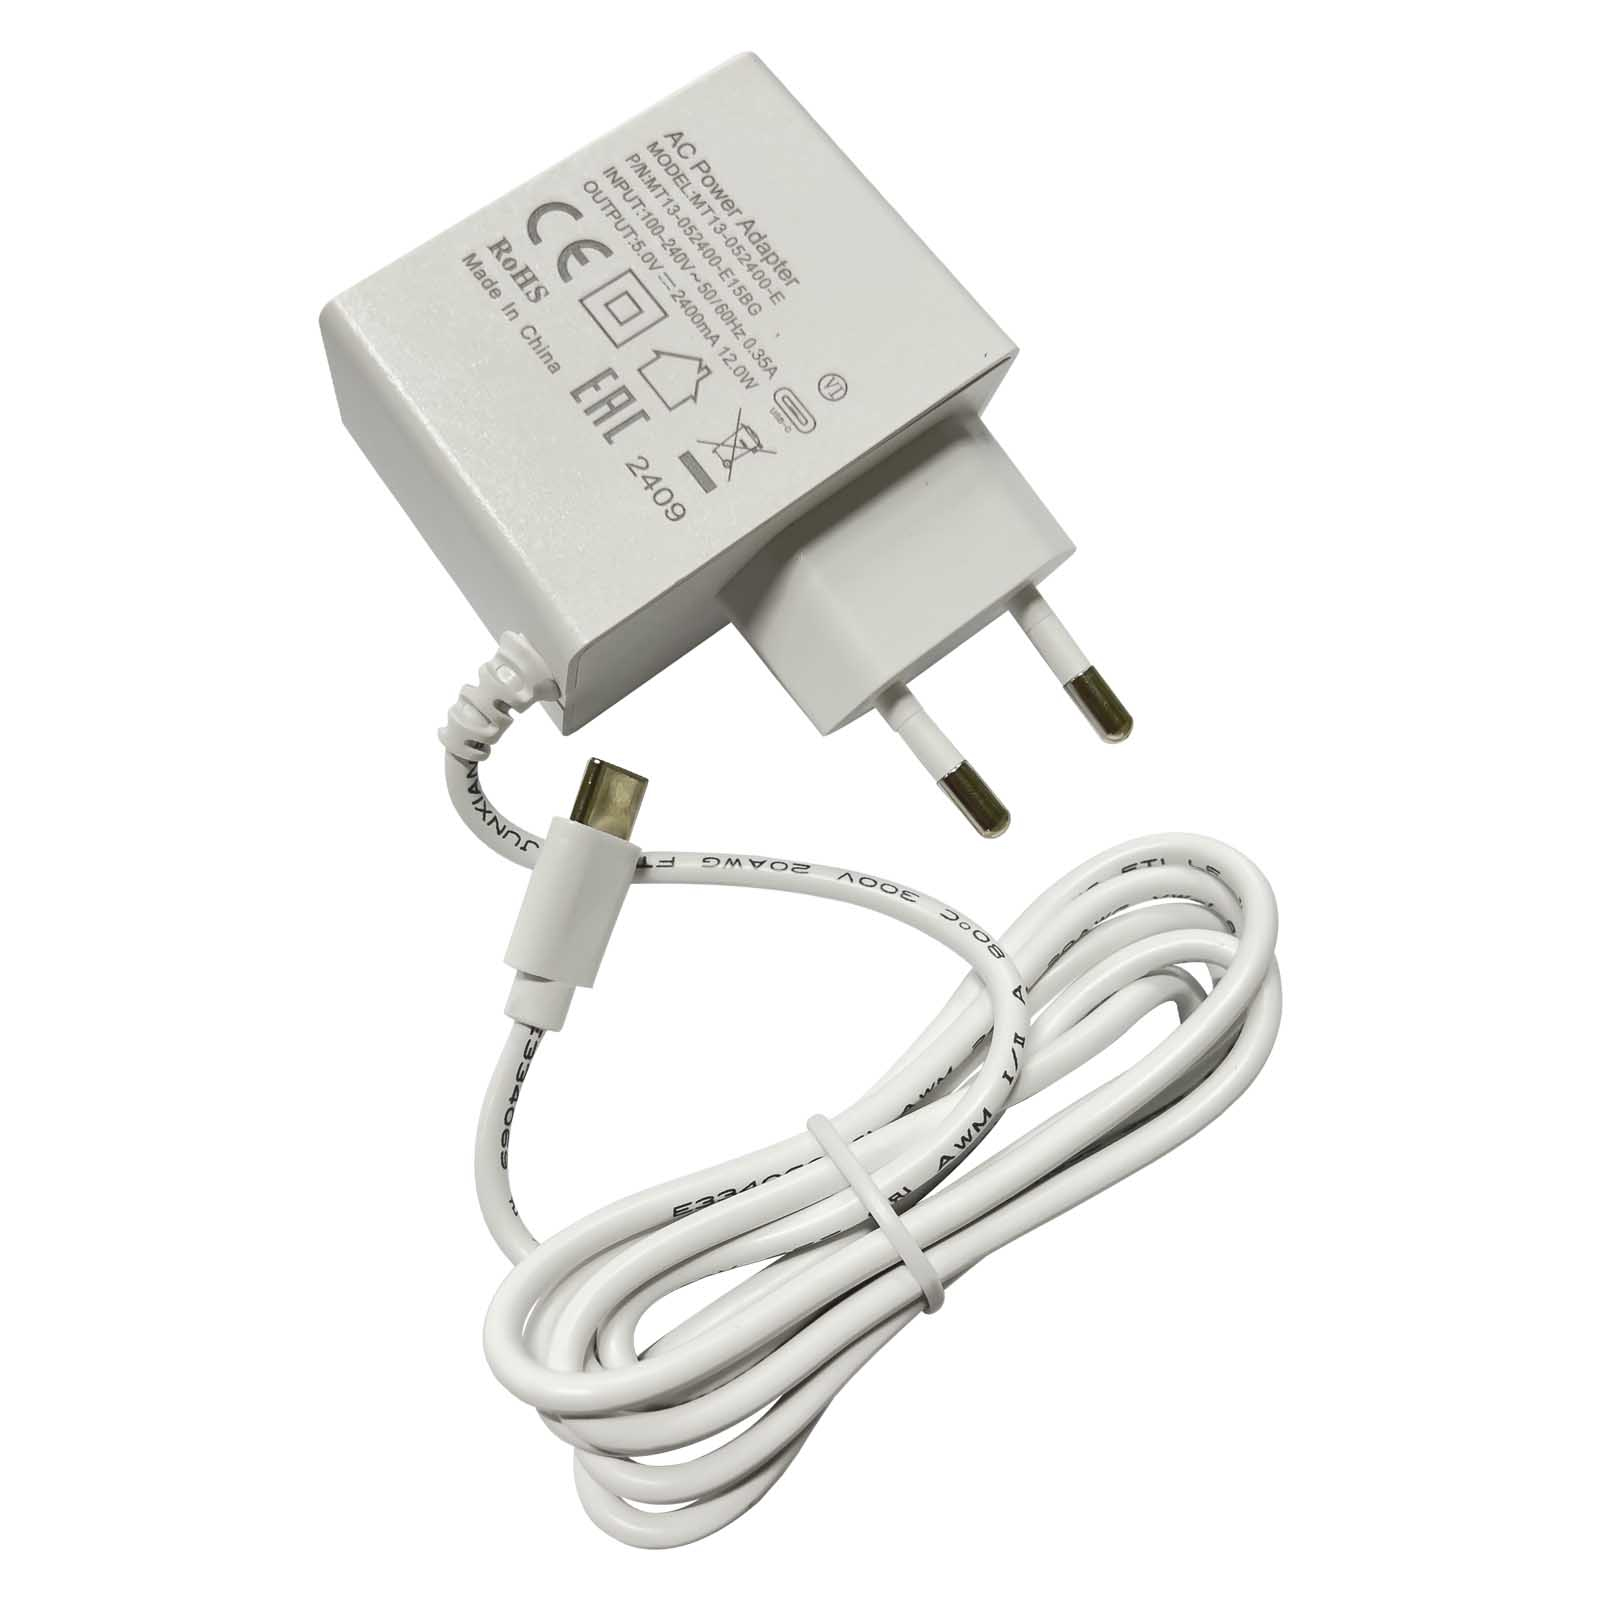 MT13-052400-E15BG MIKROTIK 5V 2.4A 12W USB Power Supply (hAP ax Lite) - MT13-052400-E15BG